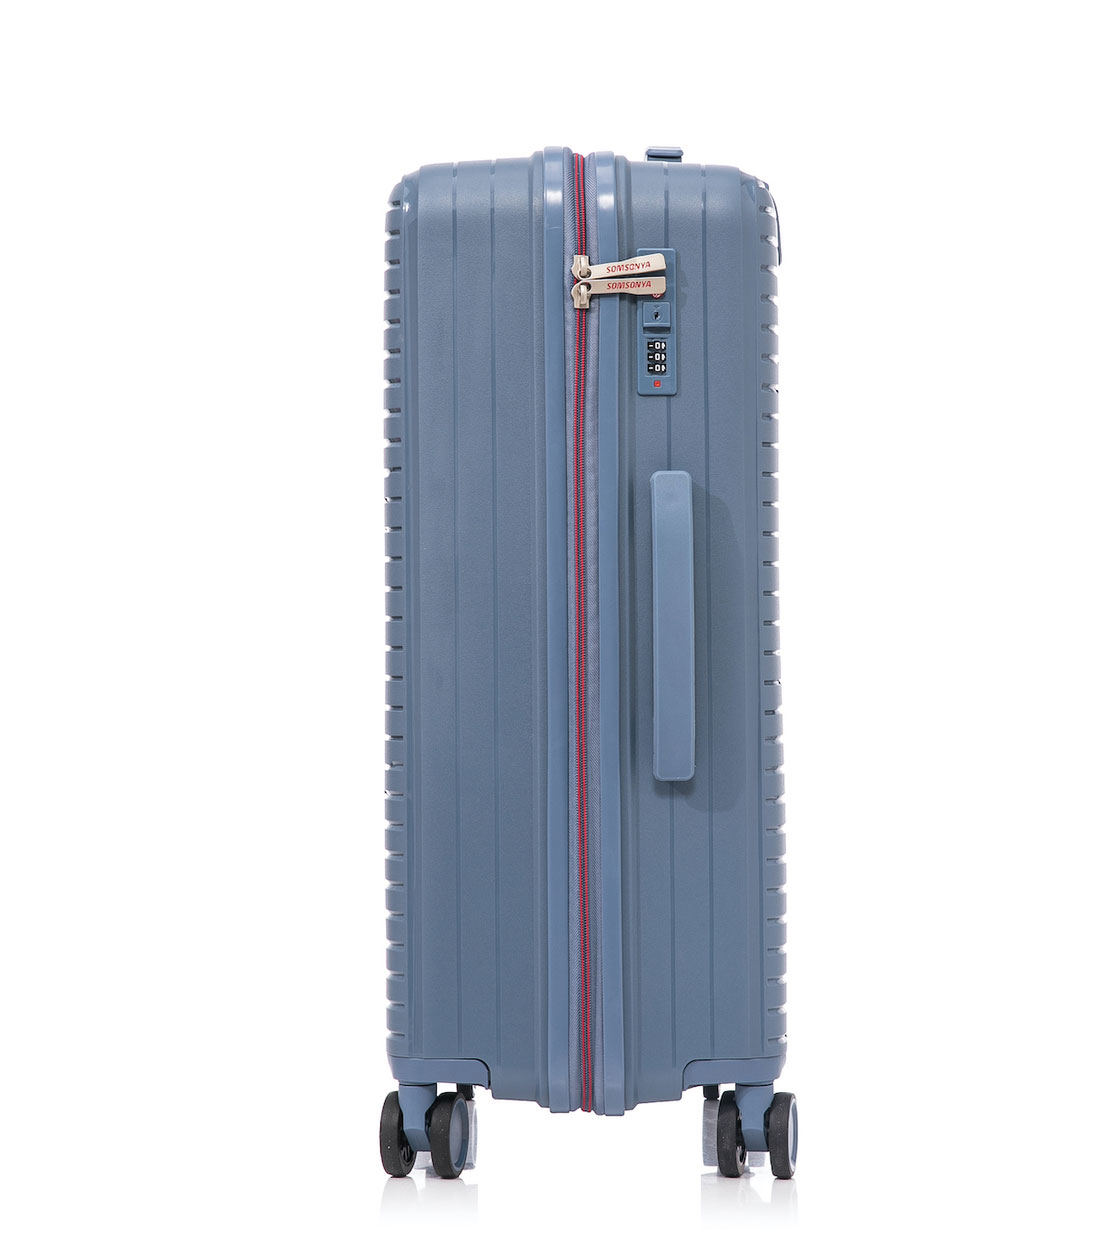 Большой чемодан Somsonya PP Singapore L (76 см) denim